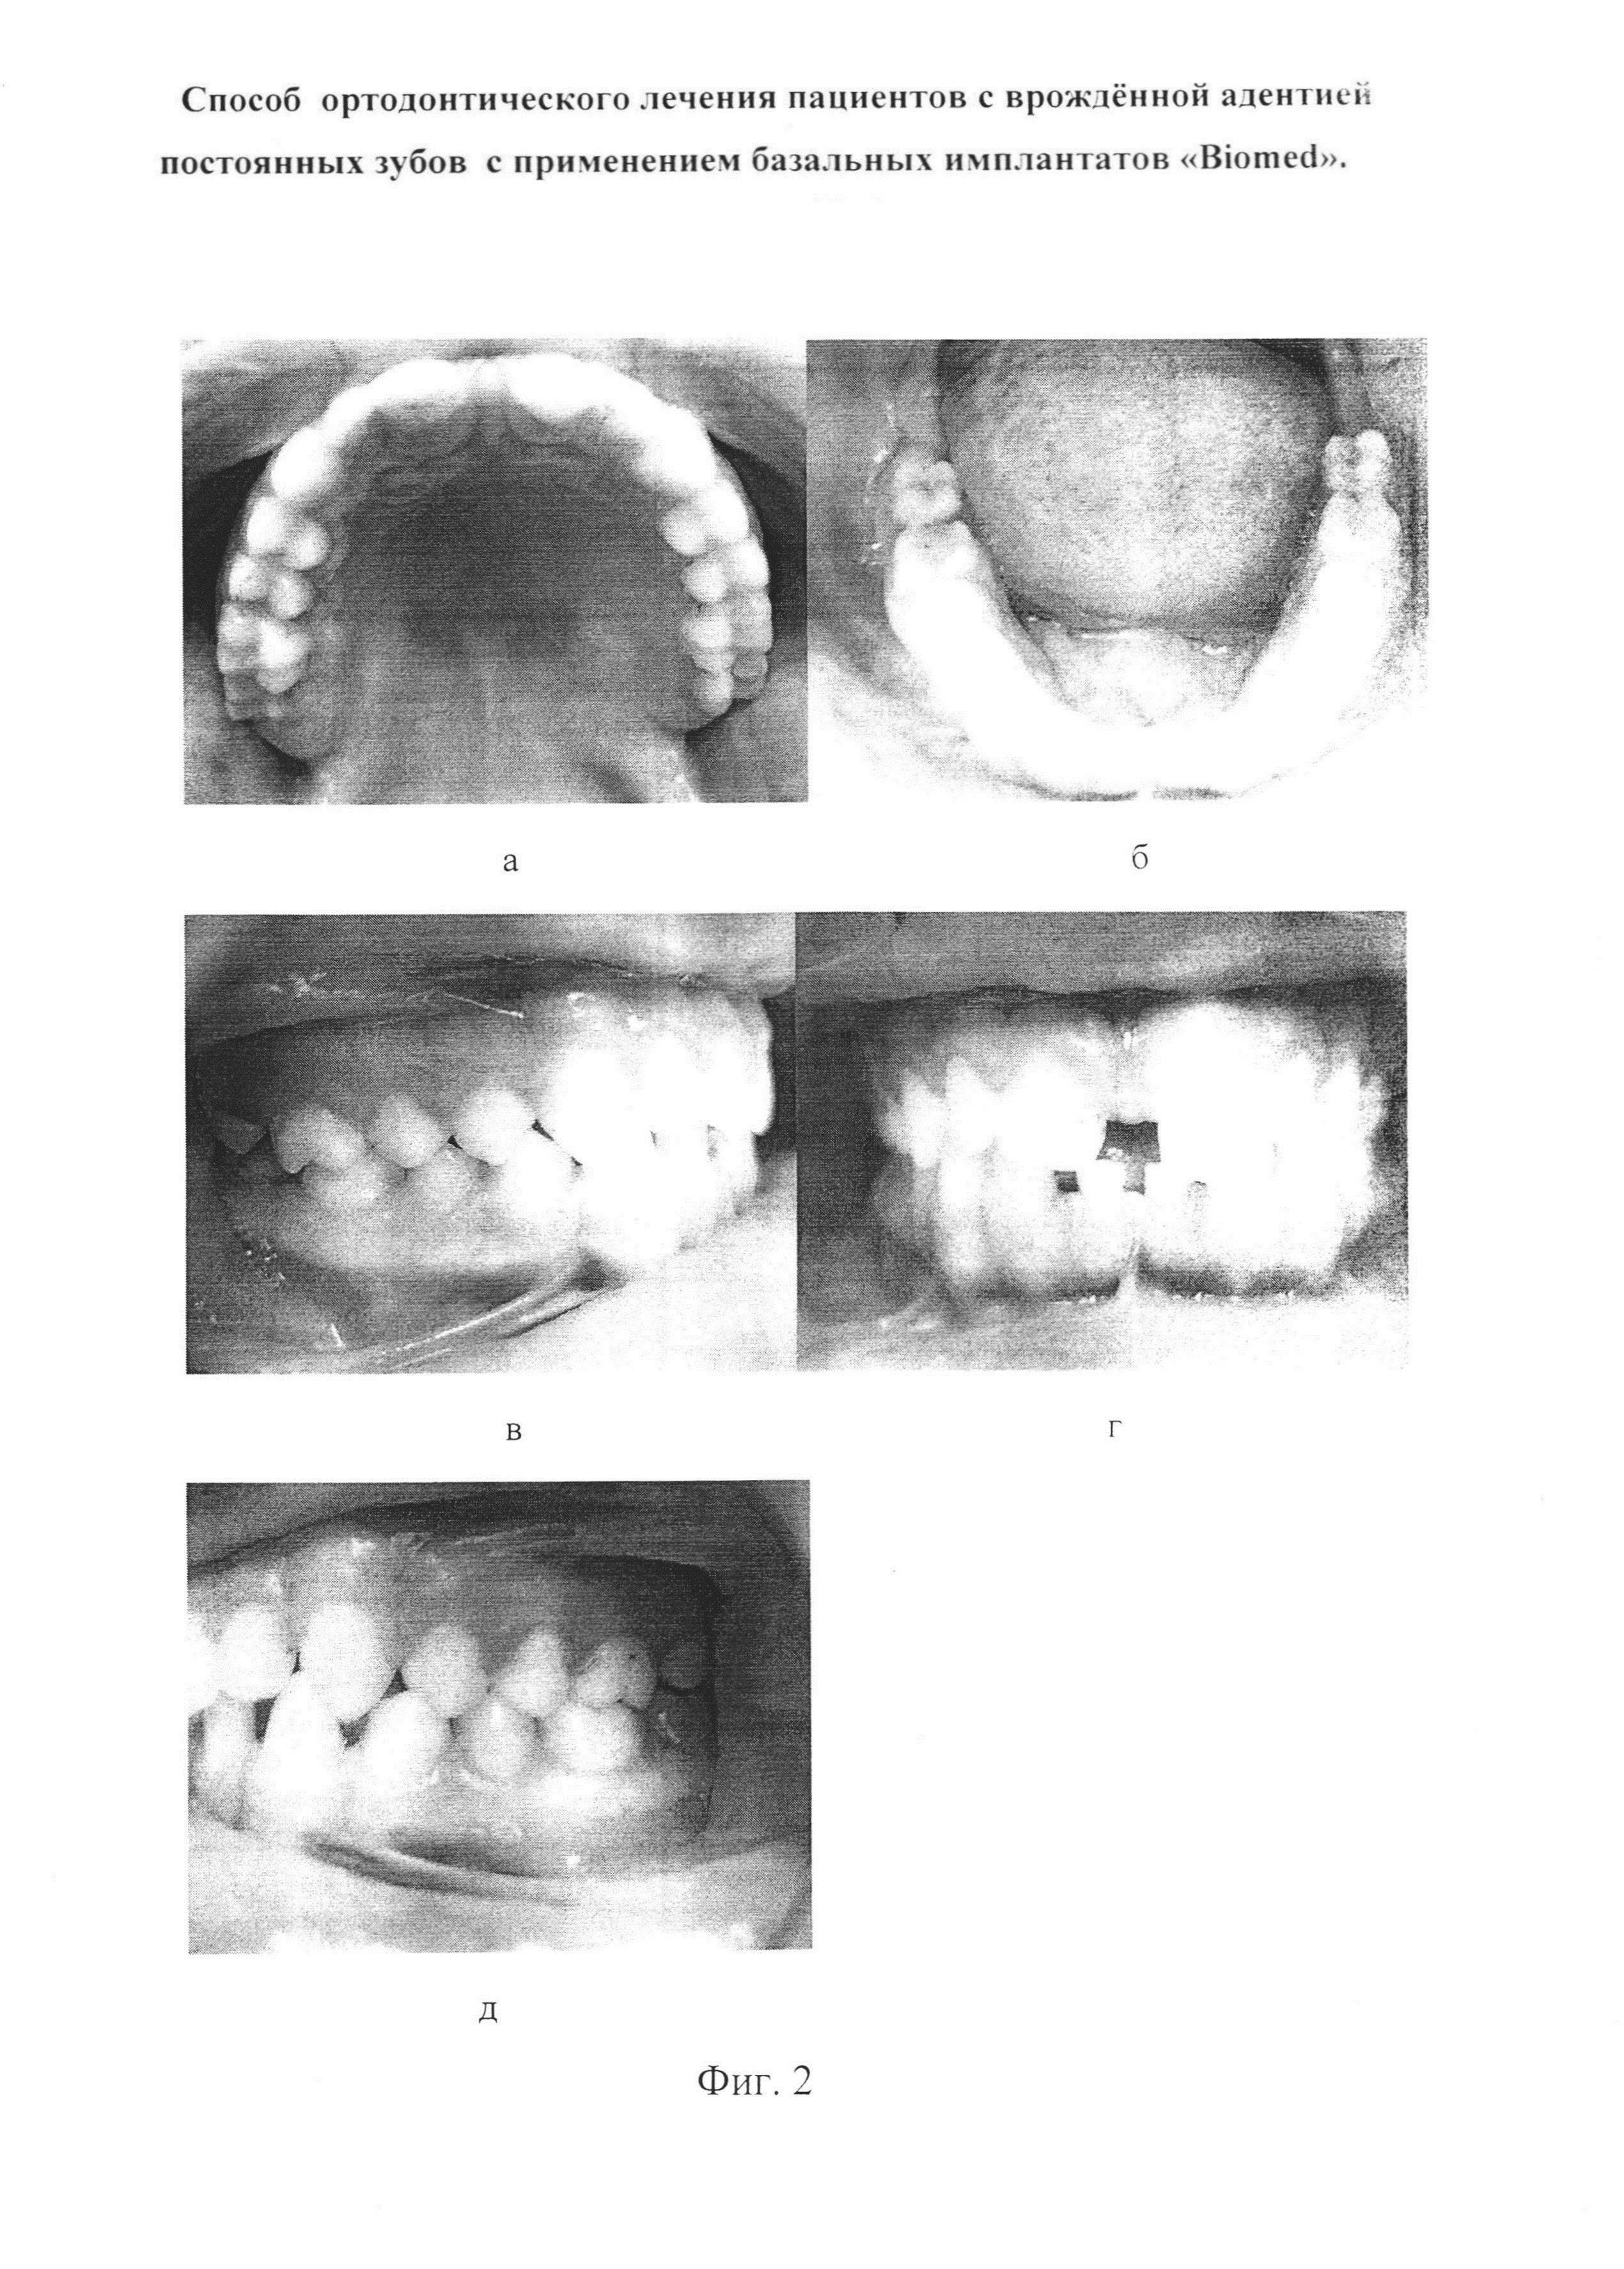 Способ ортодонтического лечения пациентов с врождённой адентией постоянных зубов с применением базальных имплантатов 